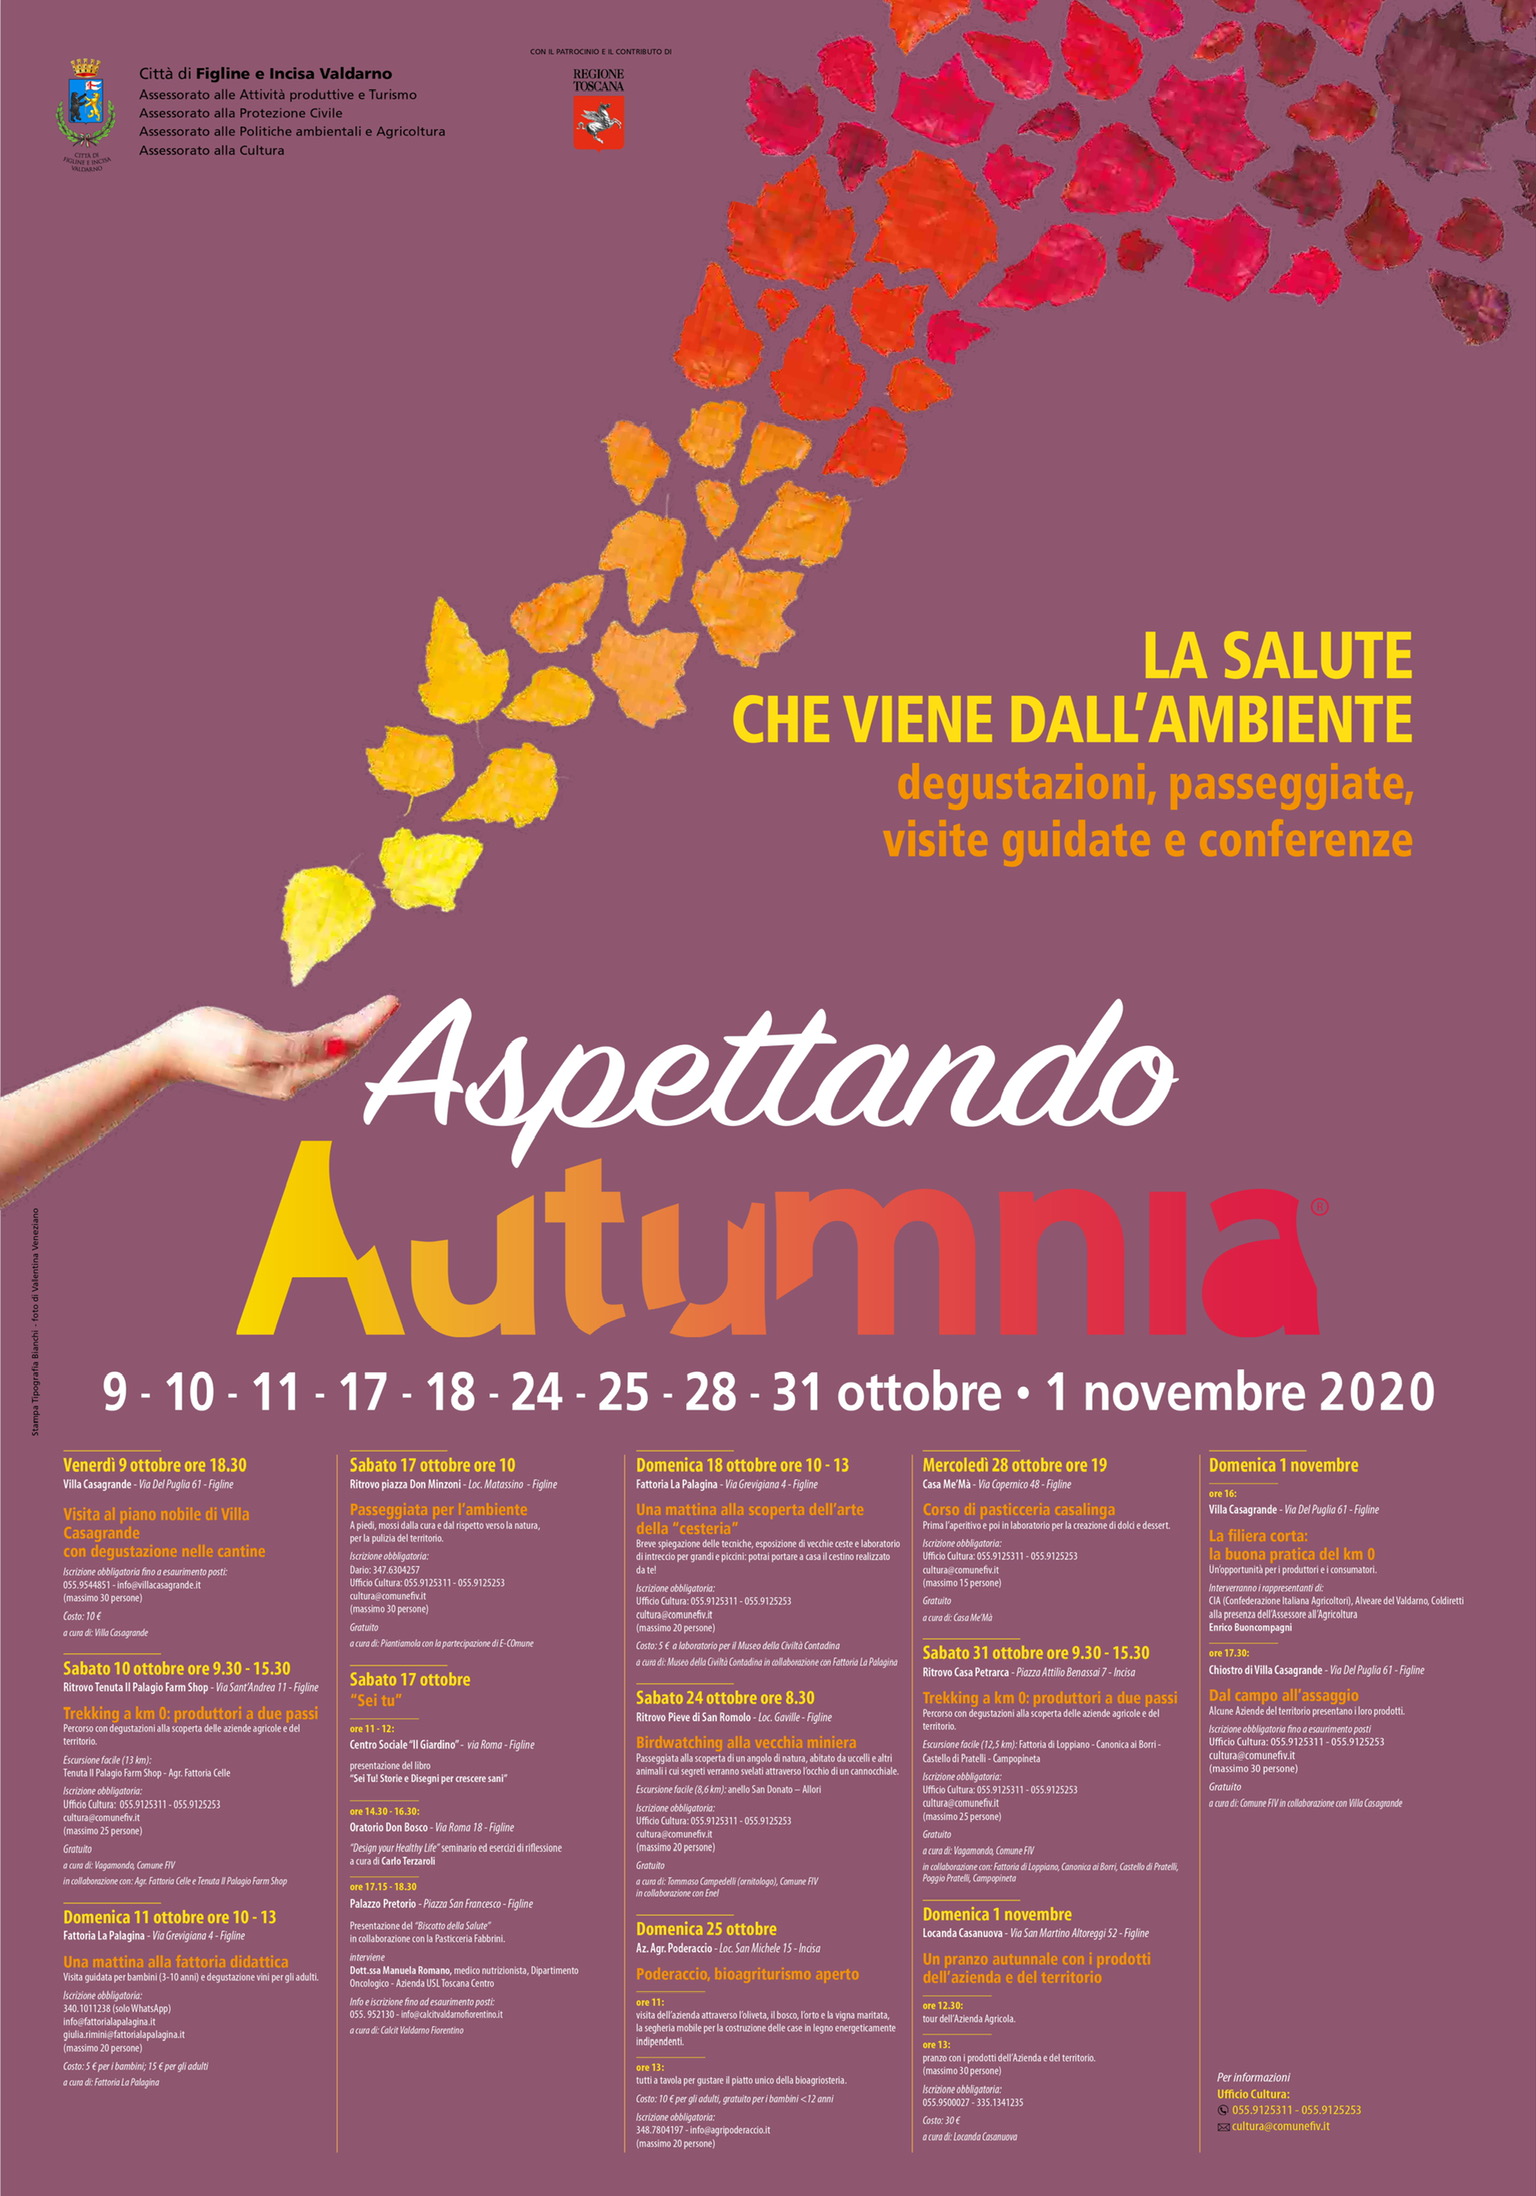 Figline-Incisa: aspettando Autumnia 2021, II edizione delle iniziative per promuovere il territorio